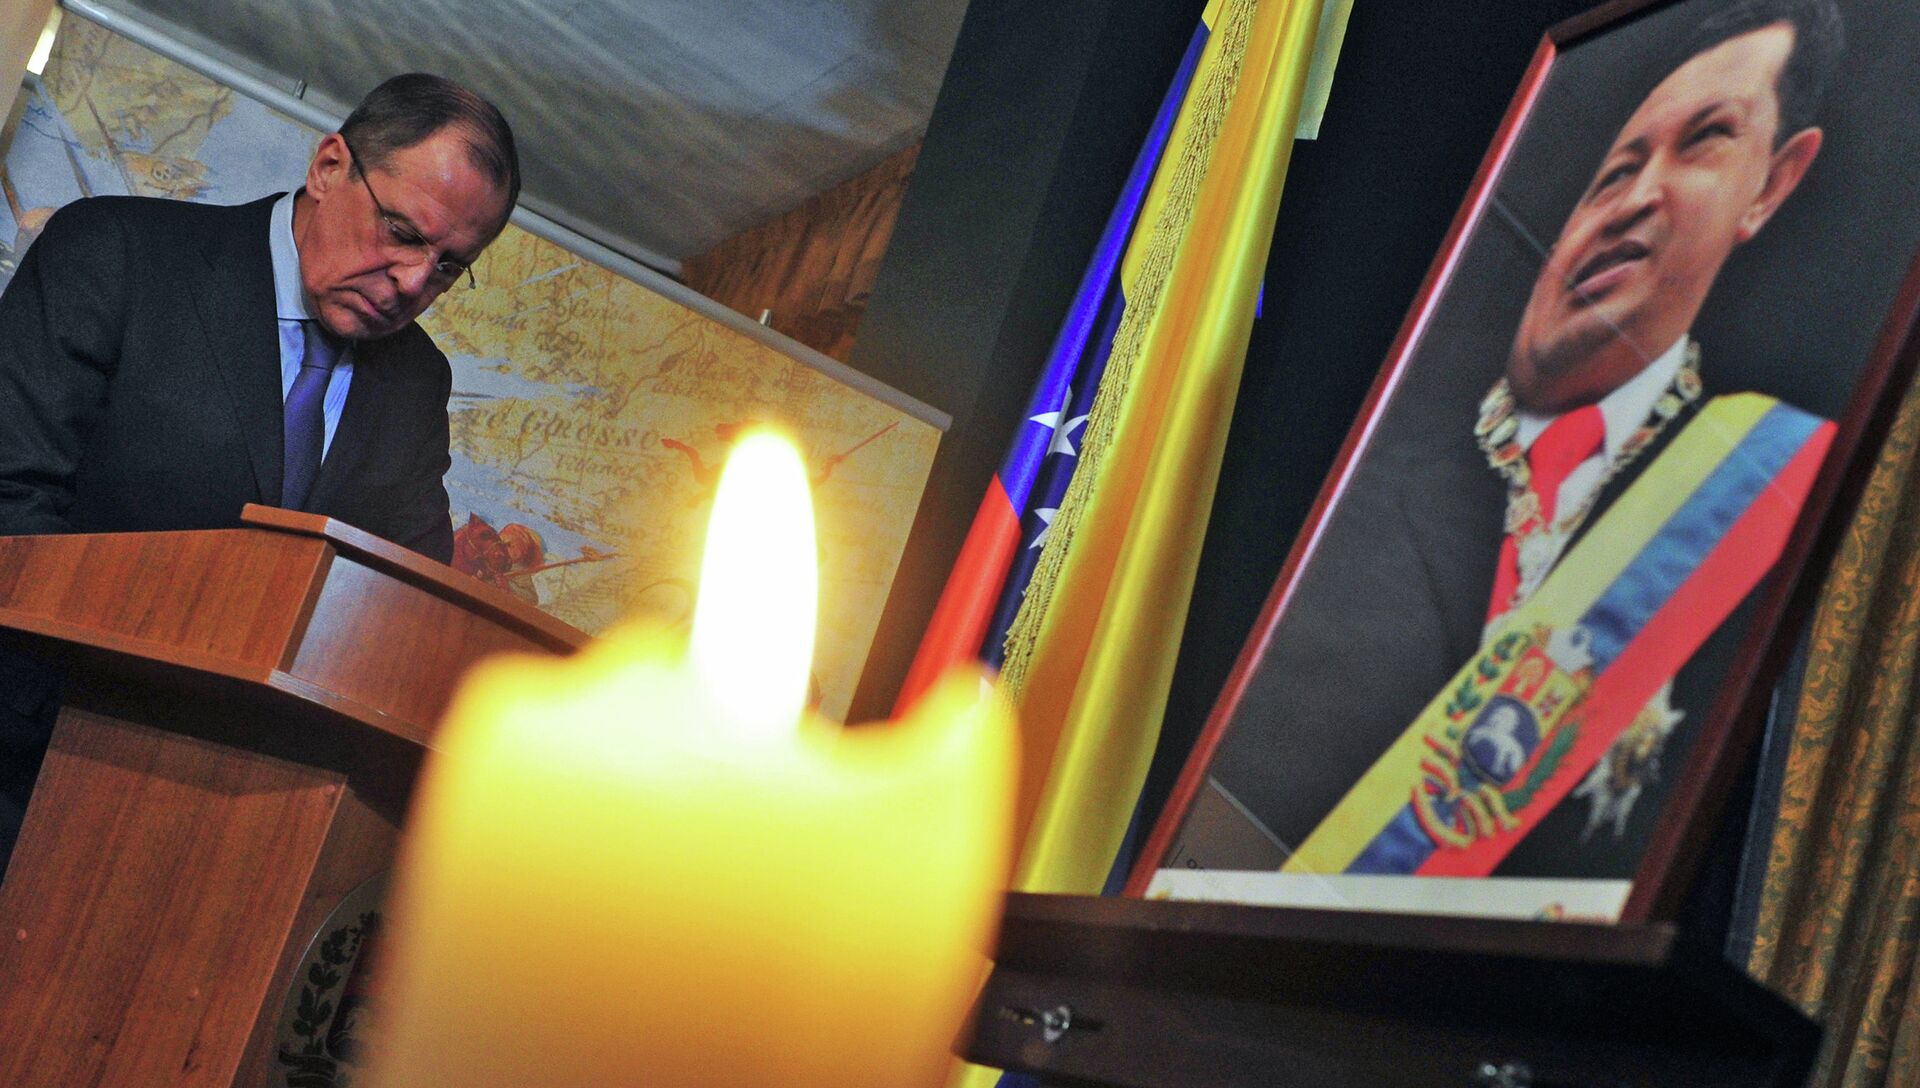 Траурные мероприятия проходят в посольстве Венесуэлы в Москве - РИА Новости, 1920, 06.03.2013